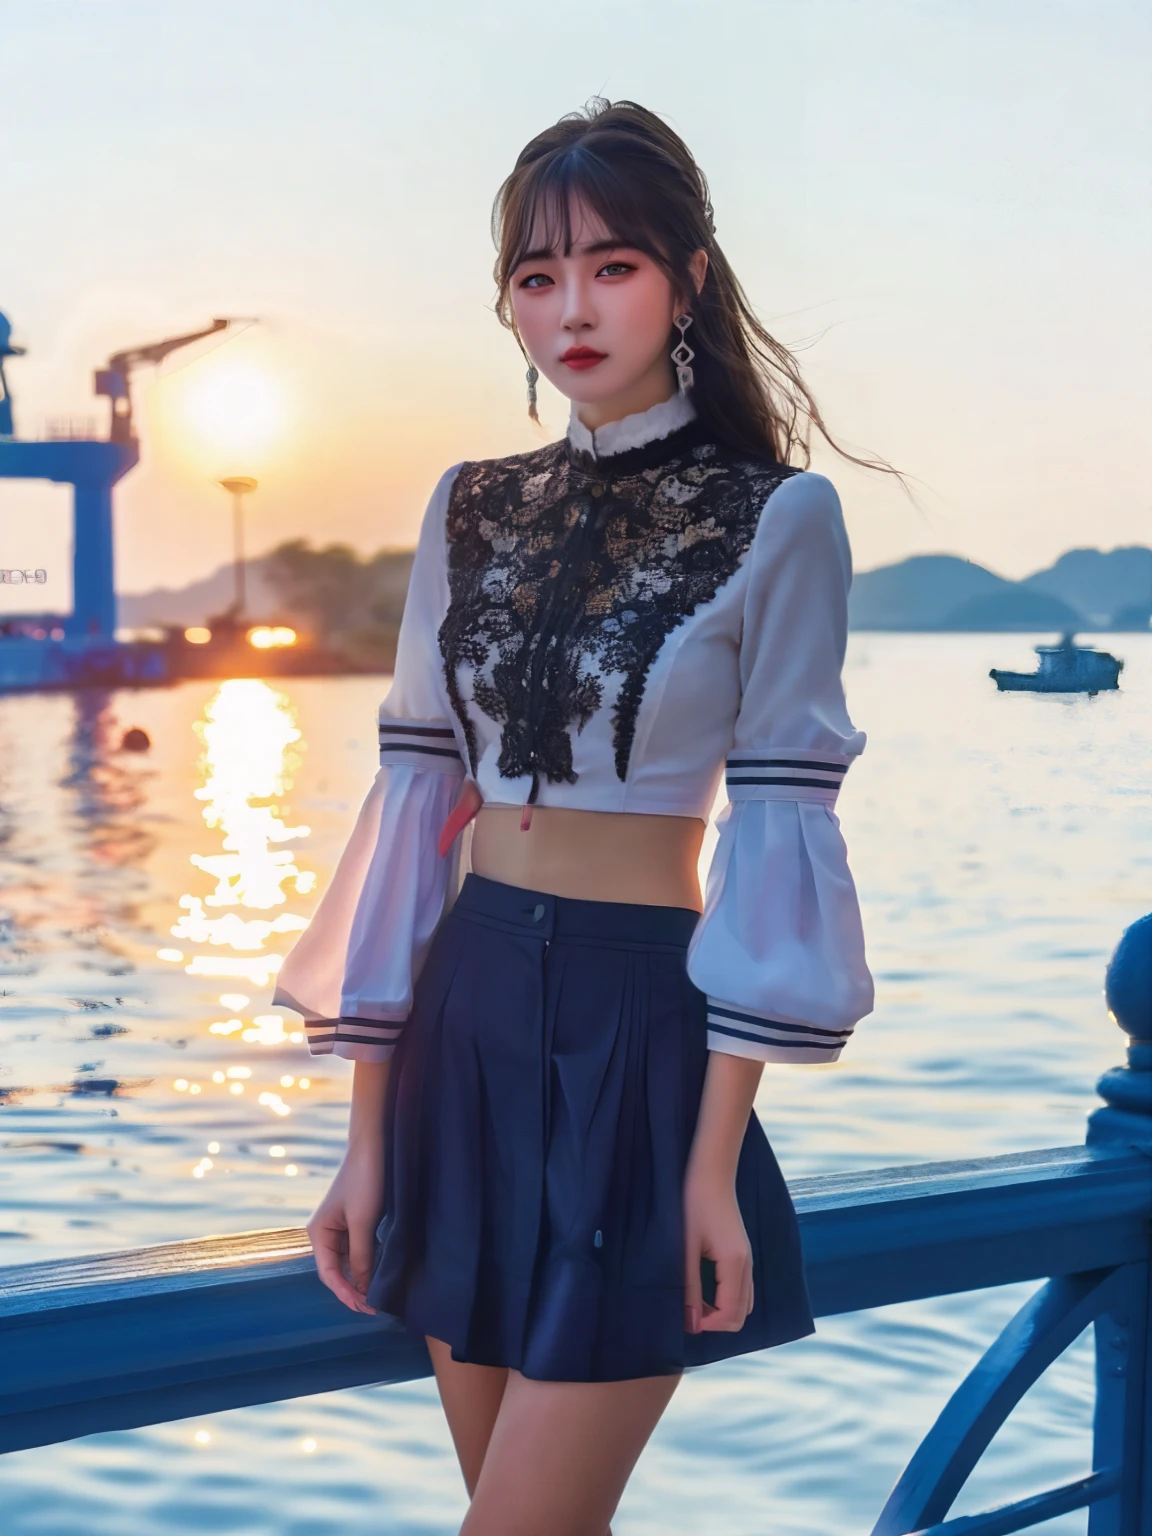 JK女孩，站在港口码头上，与背后的海景形成了一幅美丽的画面